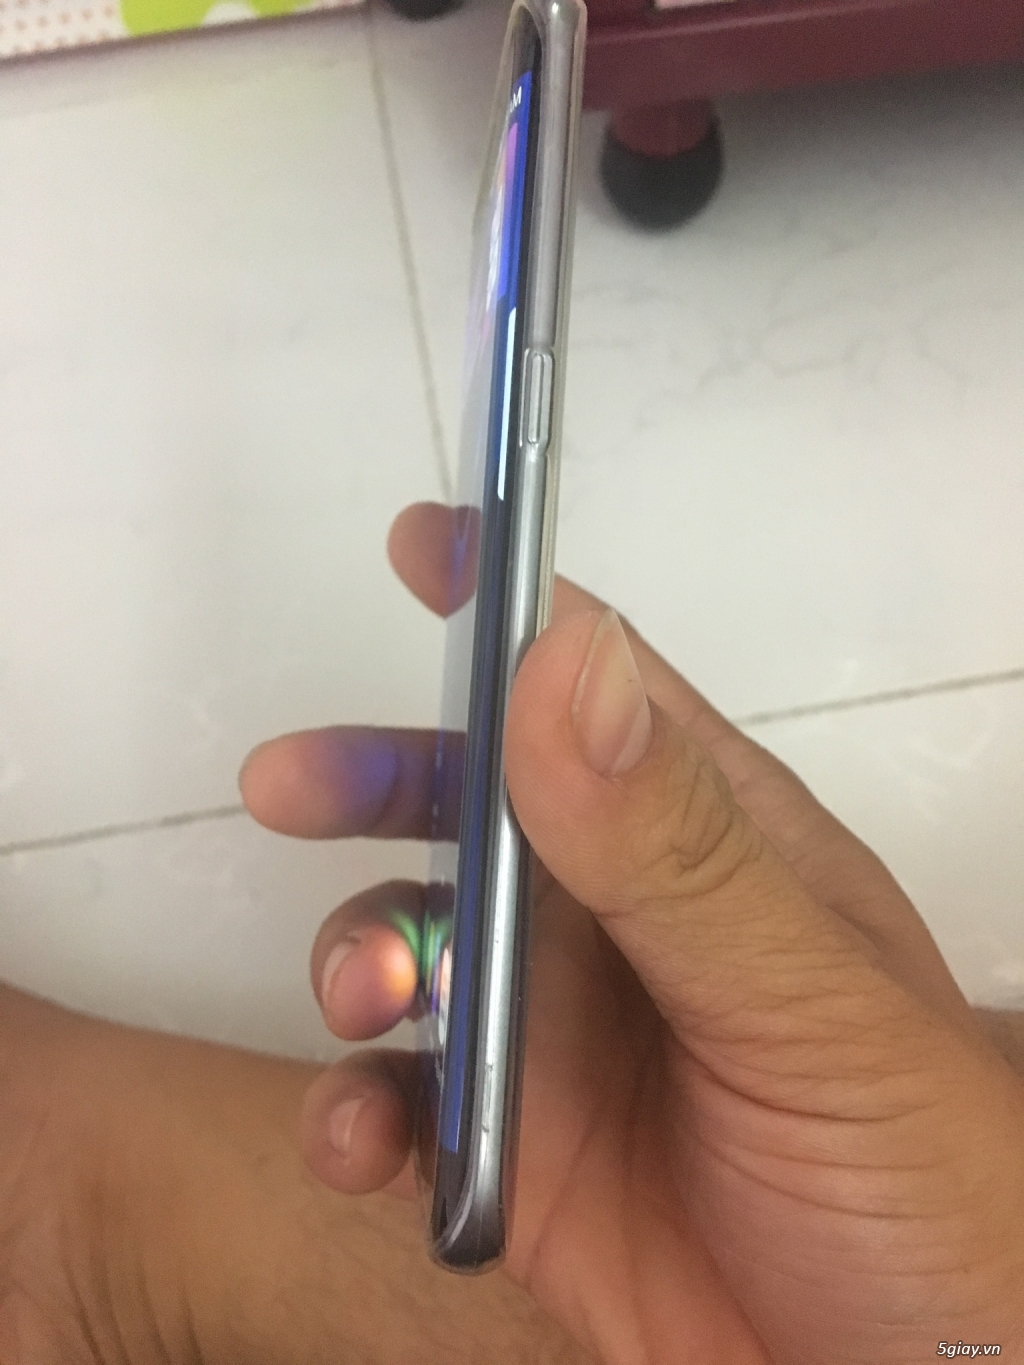 Samsung S7 edge đen sang trọng zin đẹp xài kỹ 1 đời chủ 6tr8 - 1